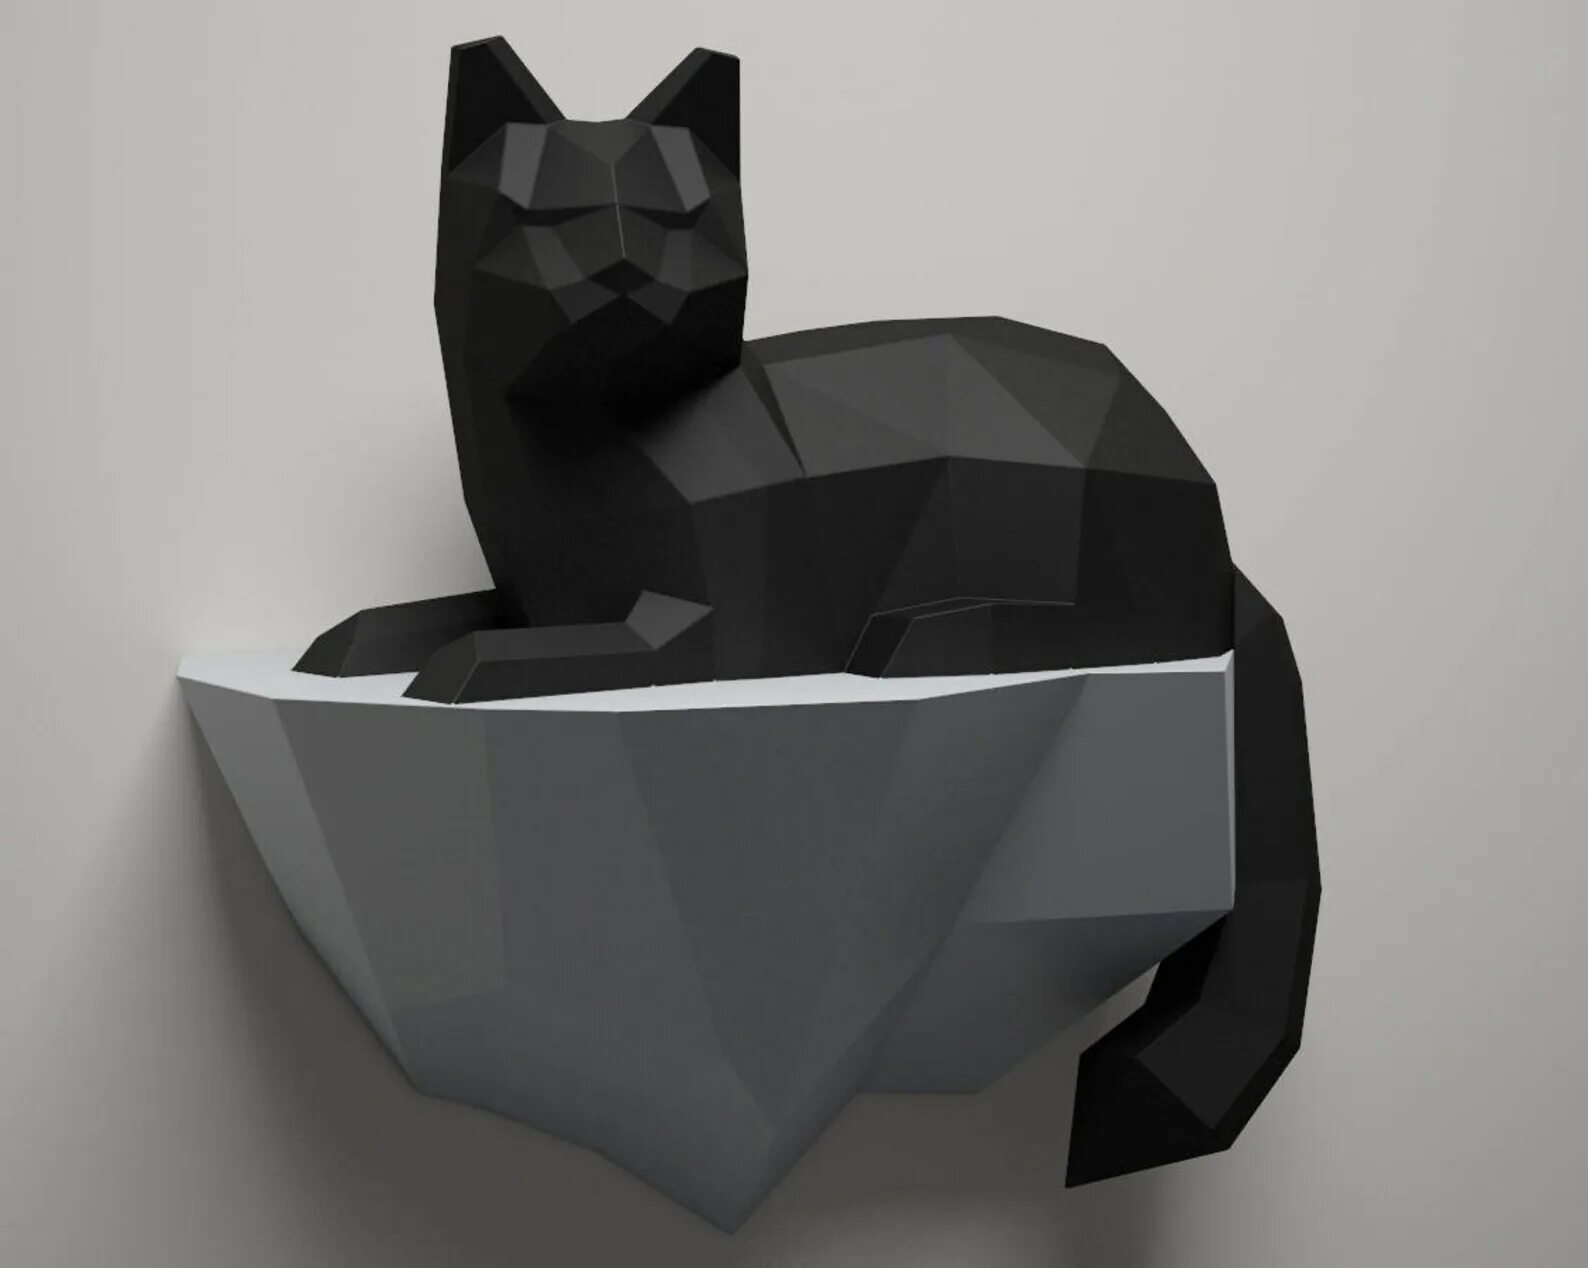 Объемная кошка из бумаги. Паперкрафт кот. Фигурка кота из бумаги. Полигональное моделирование кошка. Полигональная фигура кот.